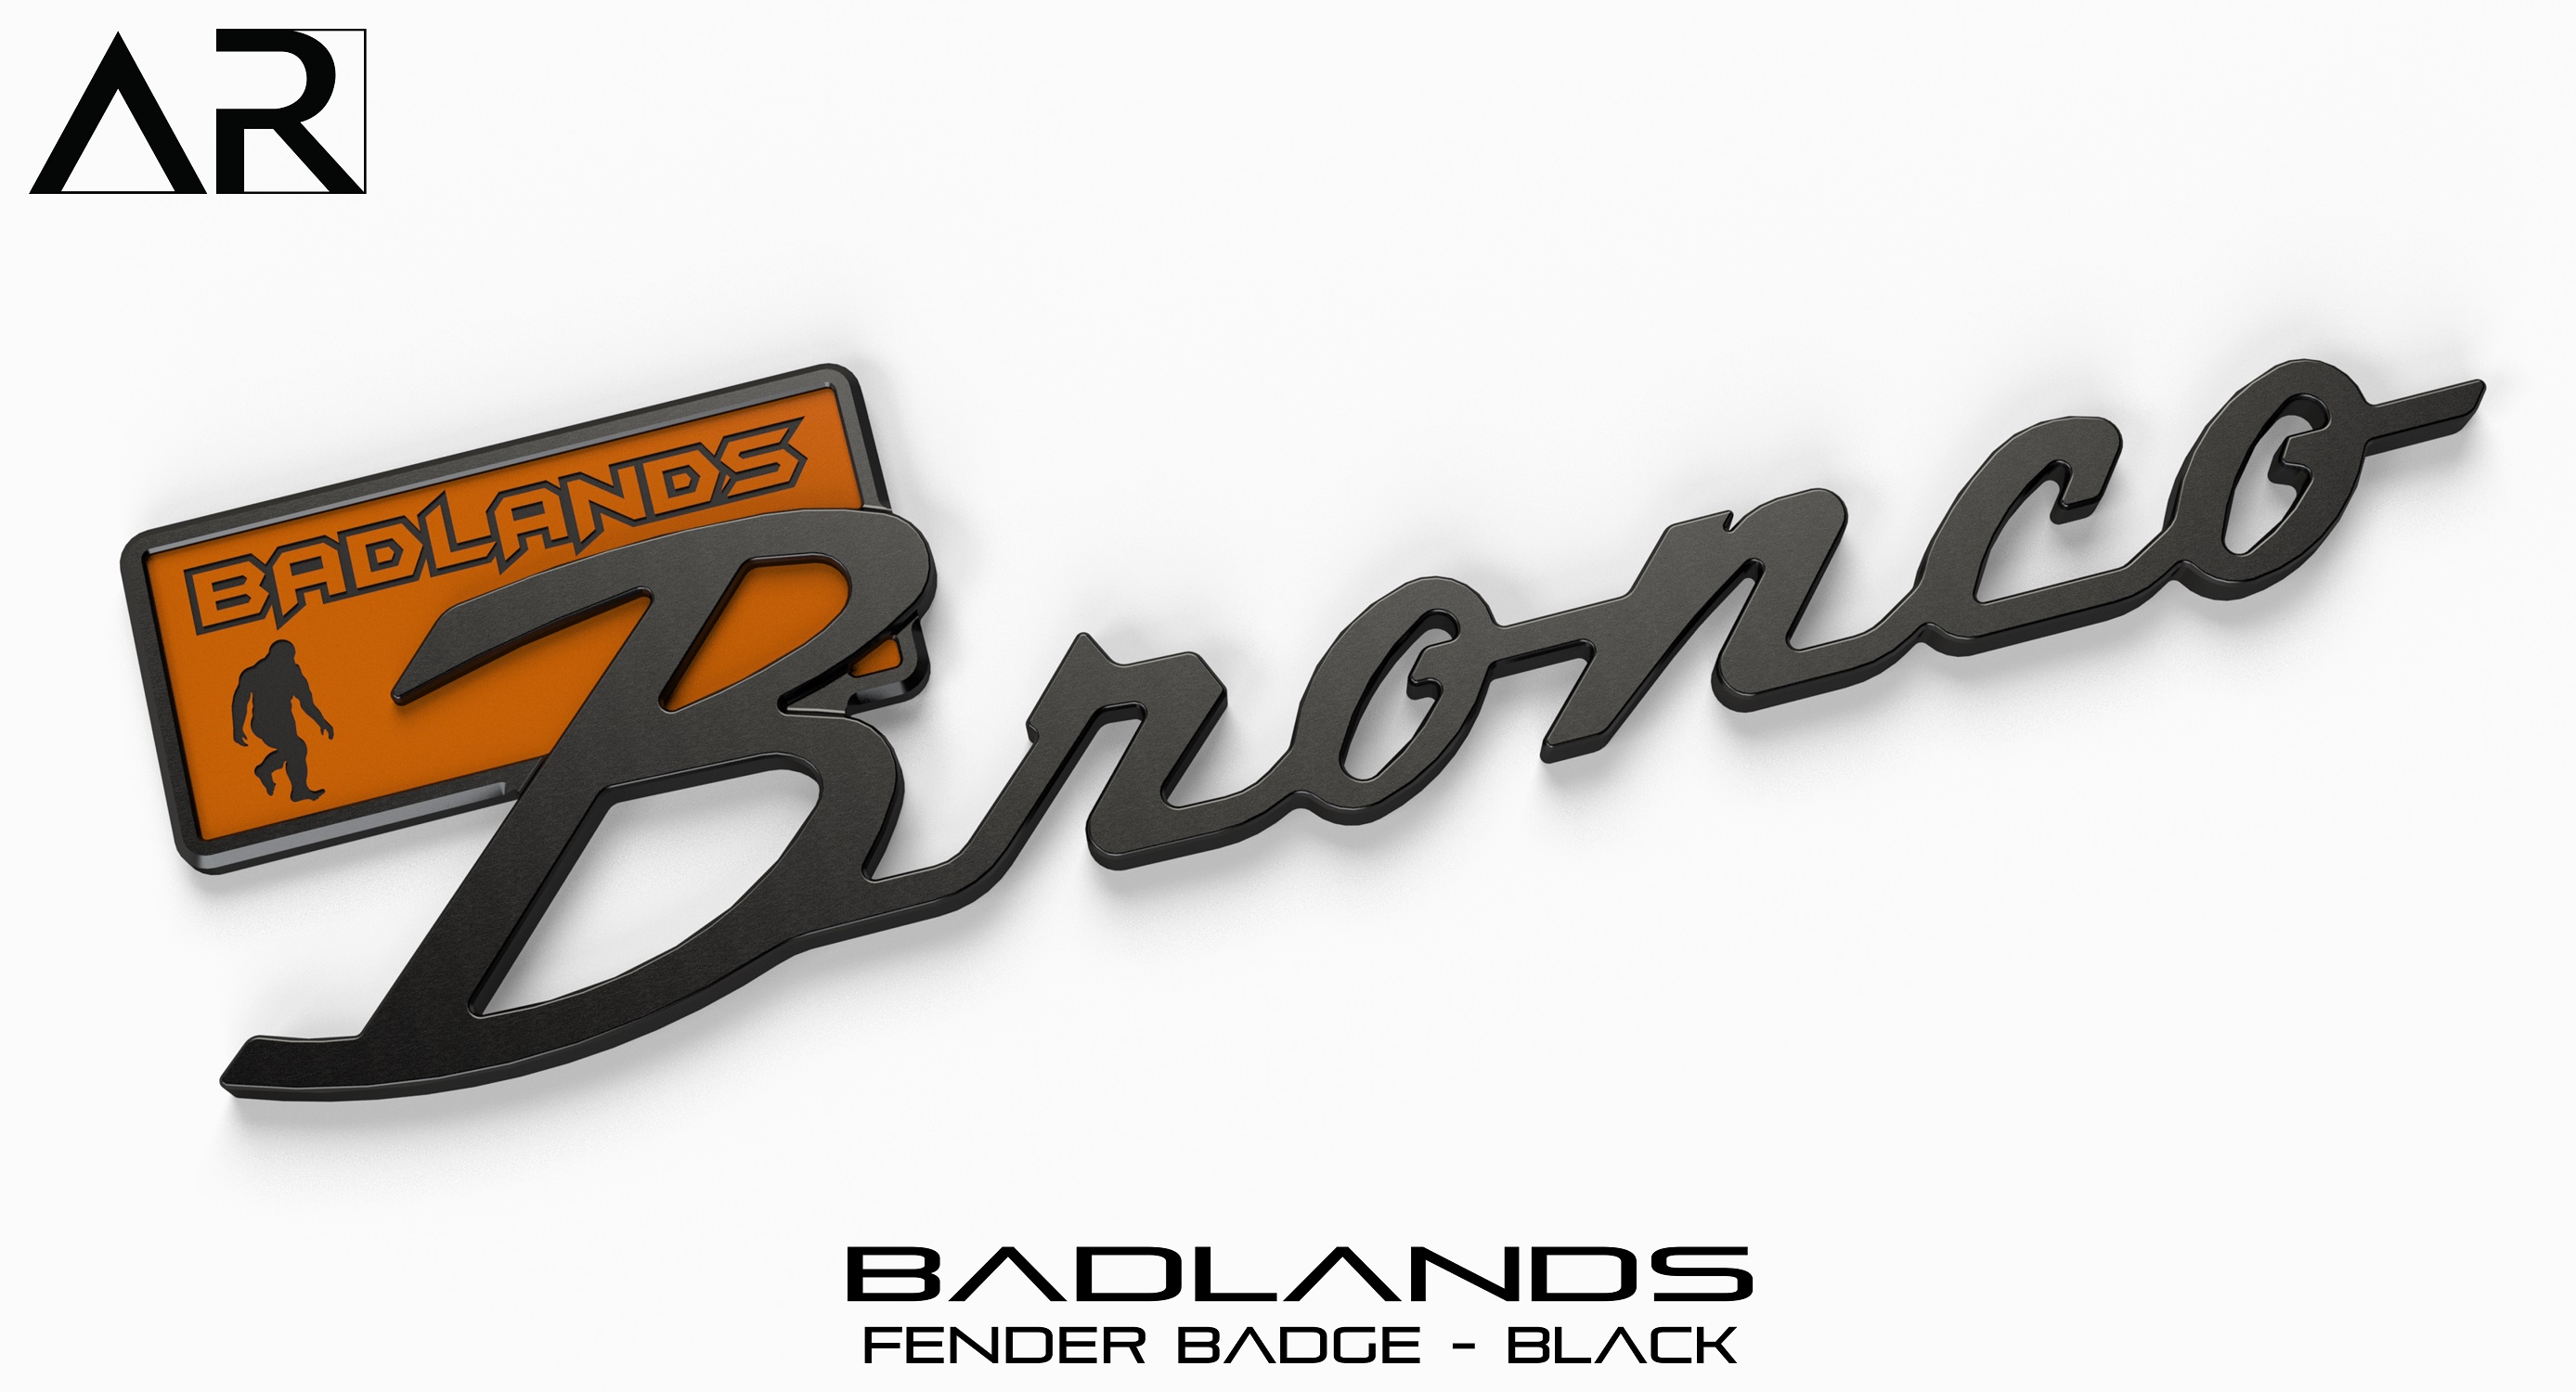 Ford Bronco AR | BRONCO CLASSIC DNA Fender Badge 1601004 - Fender Badge  - Badlands - Black